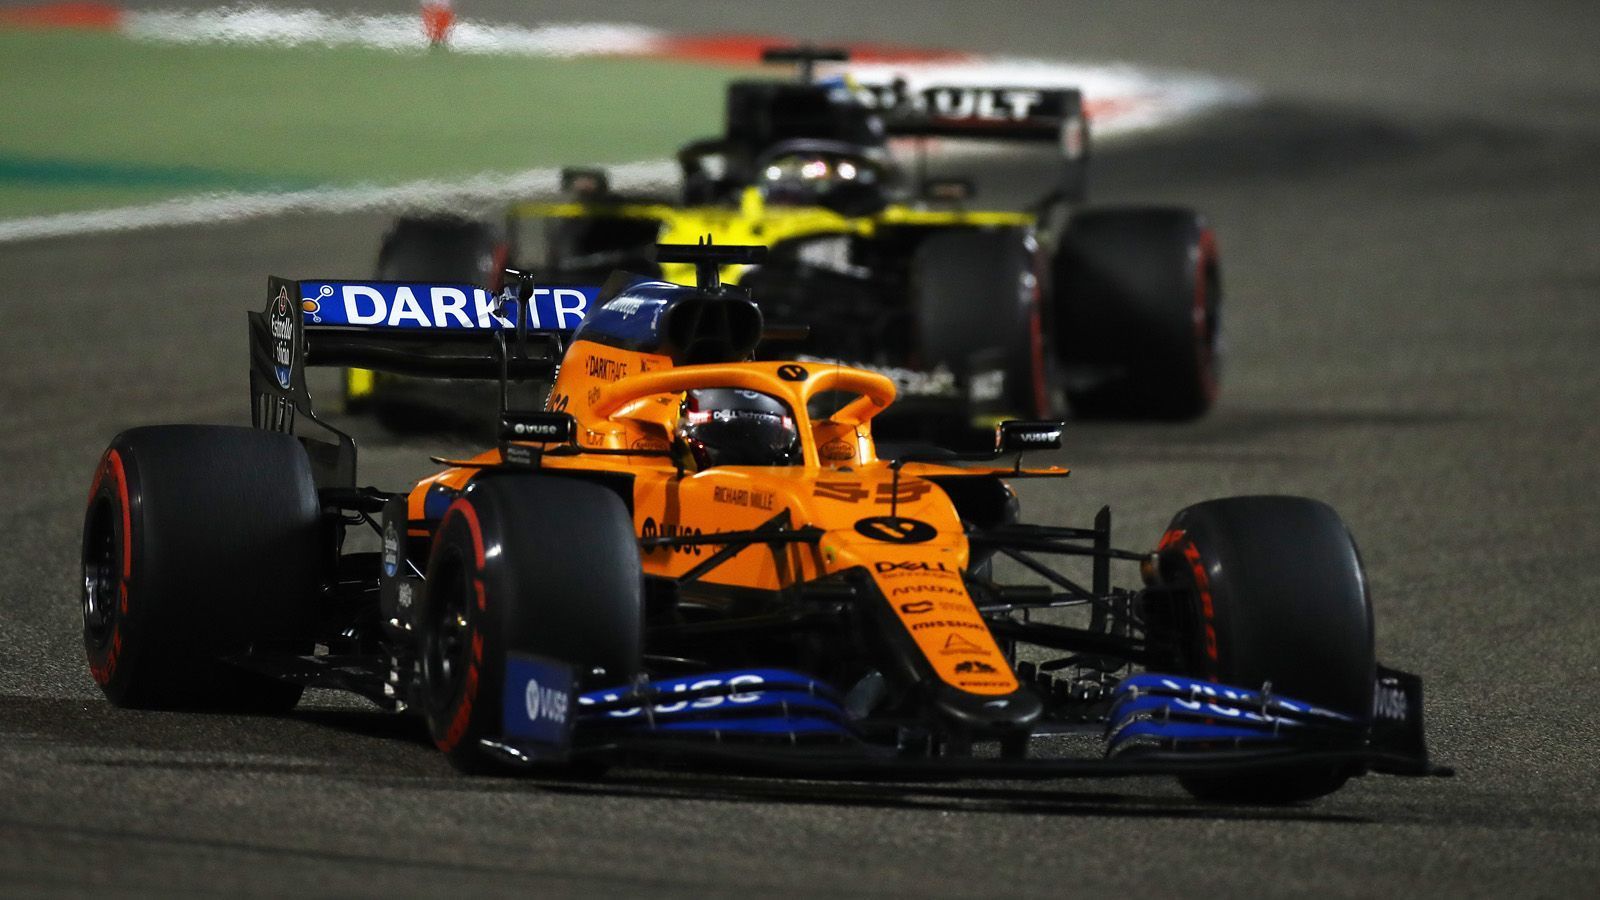 
                <strong>Verlierer: McLaren</strong><br>
                Vergangene Woche war McLaren noch der große Gewinner. Mit Platz vier und fünf zog man in der Konstrukteurswertung an Racing Point vorbei und schob sich auf Rang drei. Doch während Renault und vor allem Racing Point an diesem Wochenende richtig gut punkteten, konnte McLaren nur bedingt einen Vorteil aus dem Chaos ziehen. Carlos Sainz wurde Vierter, Lando Norris rettete als Zehnter immerhin einen Punkt über die Ziellinie. Vor dem abschließenden Grand Prix in Abu Dhabi ist nun Racing Point wieder in der Favoritenrolle und hat mit 194 Zählern zehn Punkte mehr auf dem Konto als McLaren. Renault liegt mit 174 Punkten dahinter.  
              